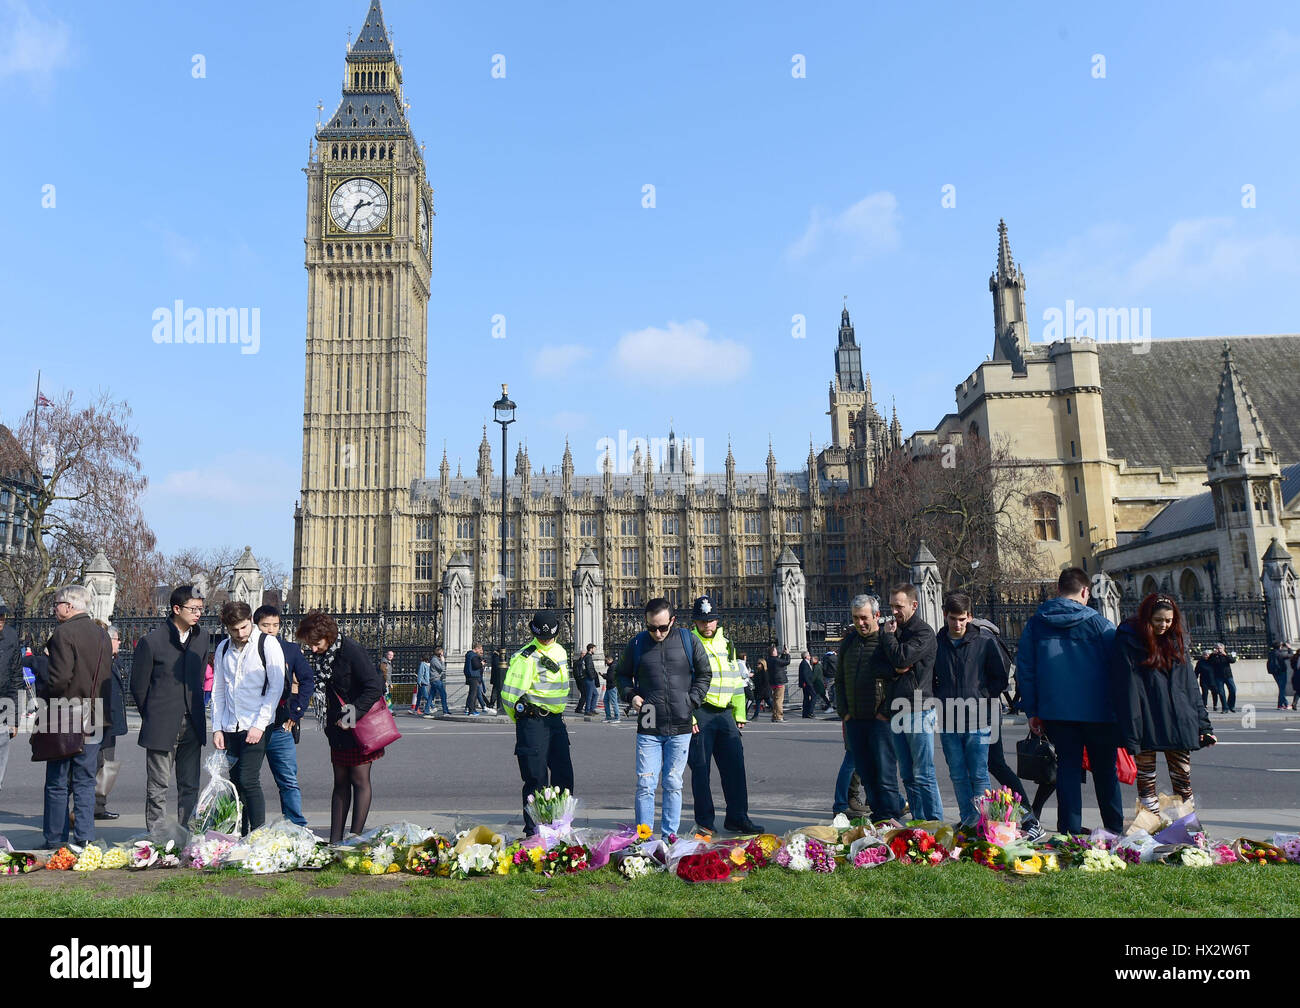 La polizia si unirà al pubblico nel guardare i fiori in Piazza del Parlamento al di fuori delle Camere del Parlamento nel centro di Londra, poiché sono stati effettuati altri due "arresti significativi" in relazione all'attacco di Westminster, ha detto la polizia. Foto Stock